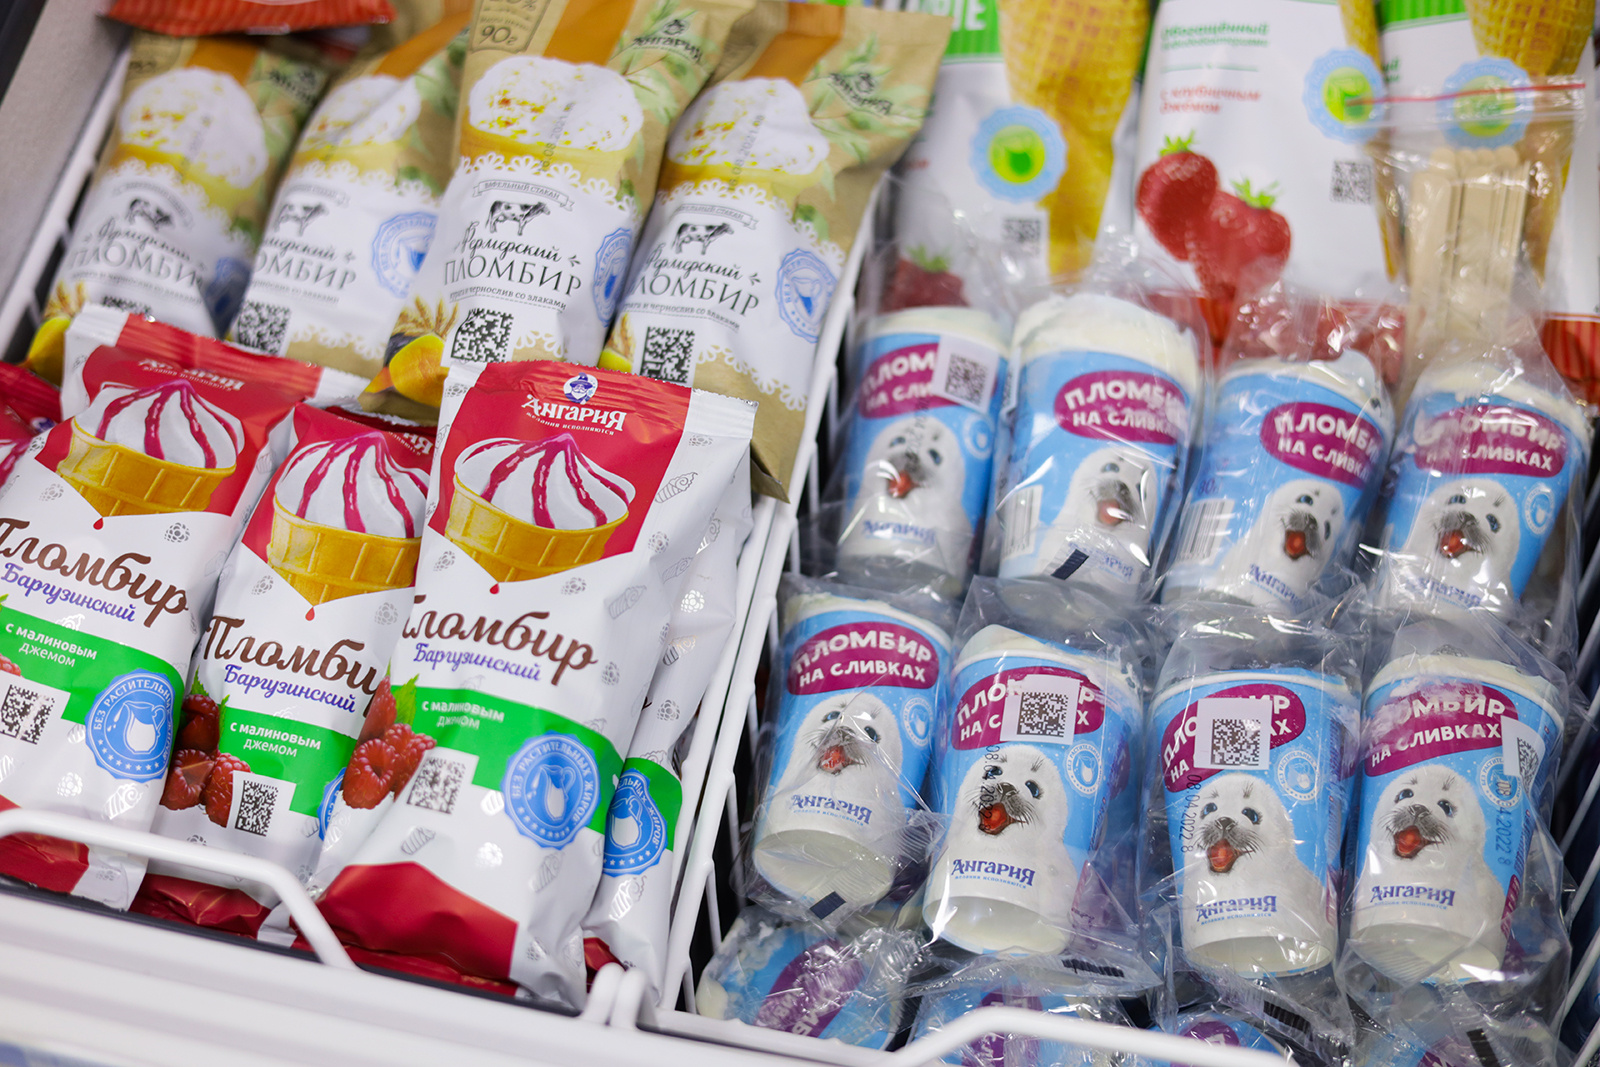 Купить мороженое «Ангария» можно в красноярских супермаркетах